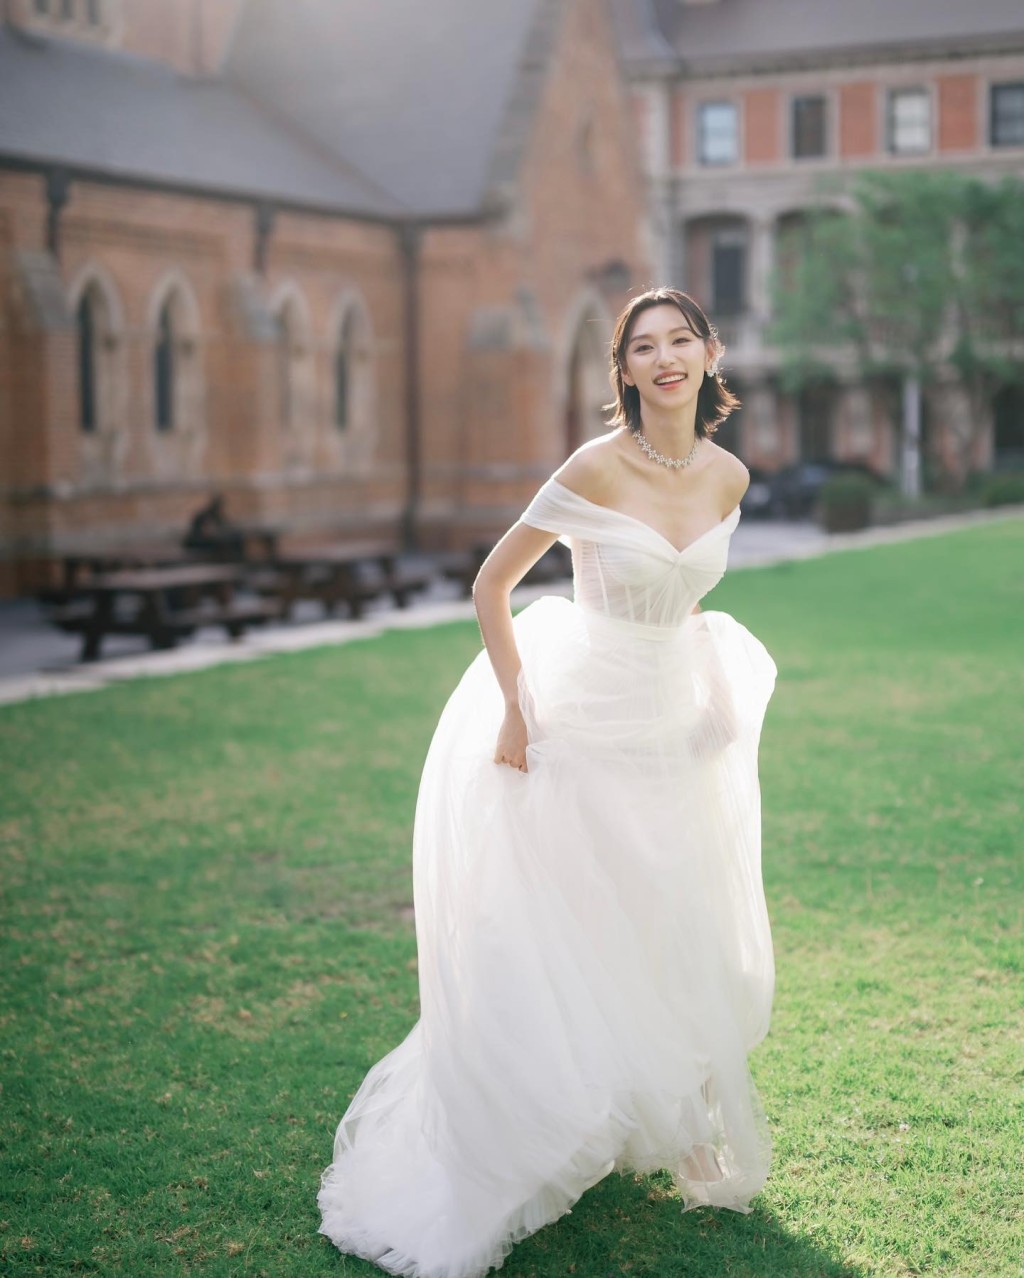 王丹妮分享了多輯兩人的sweet爆婚照。